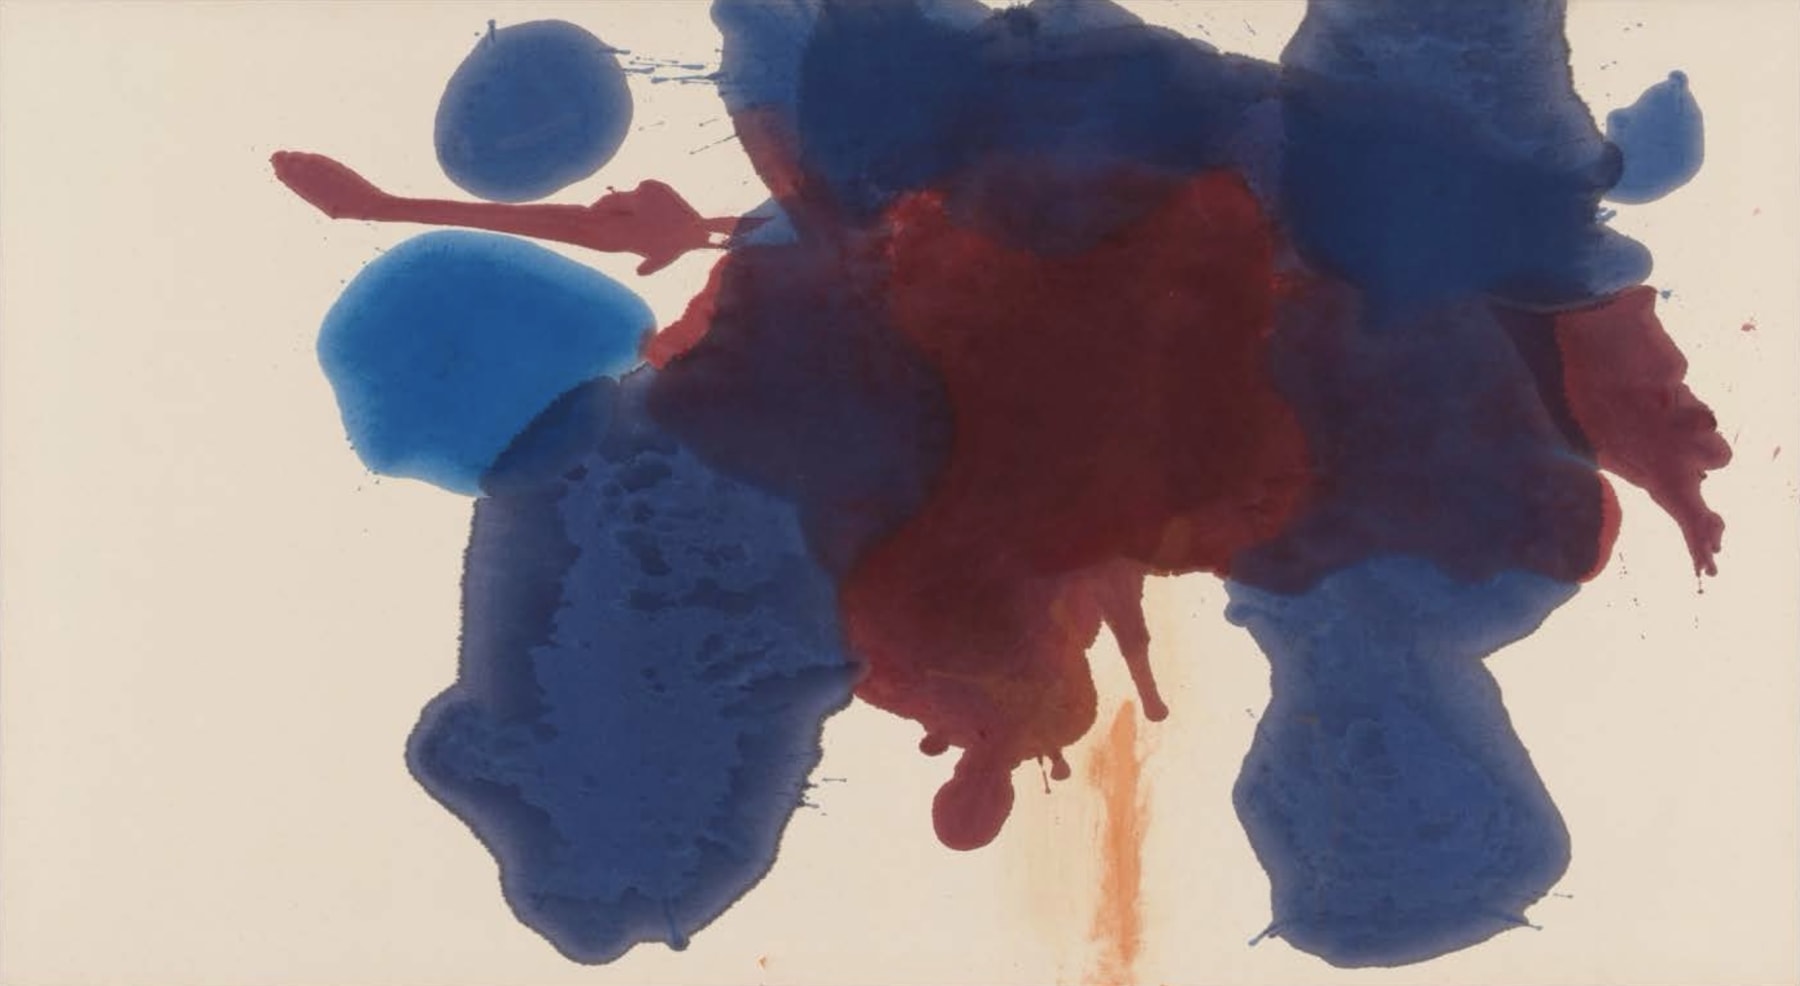 HELEN FRANKENTHALER (1928-2011)

Blue Moon

1963

Acrylic on canvas

48 1/2 x 88 inches

123.2 x 223.5cm